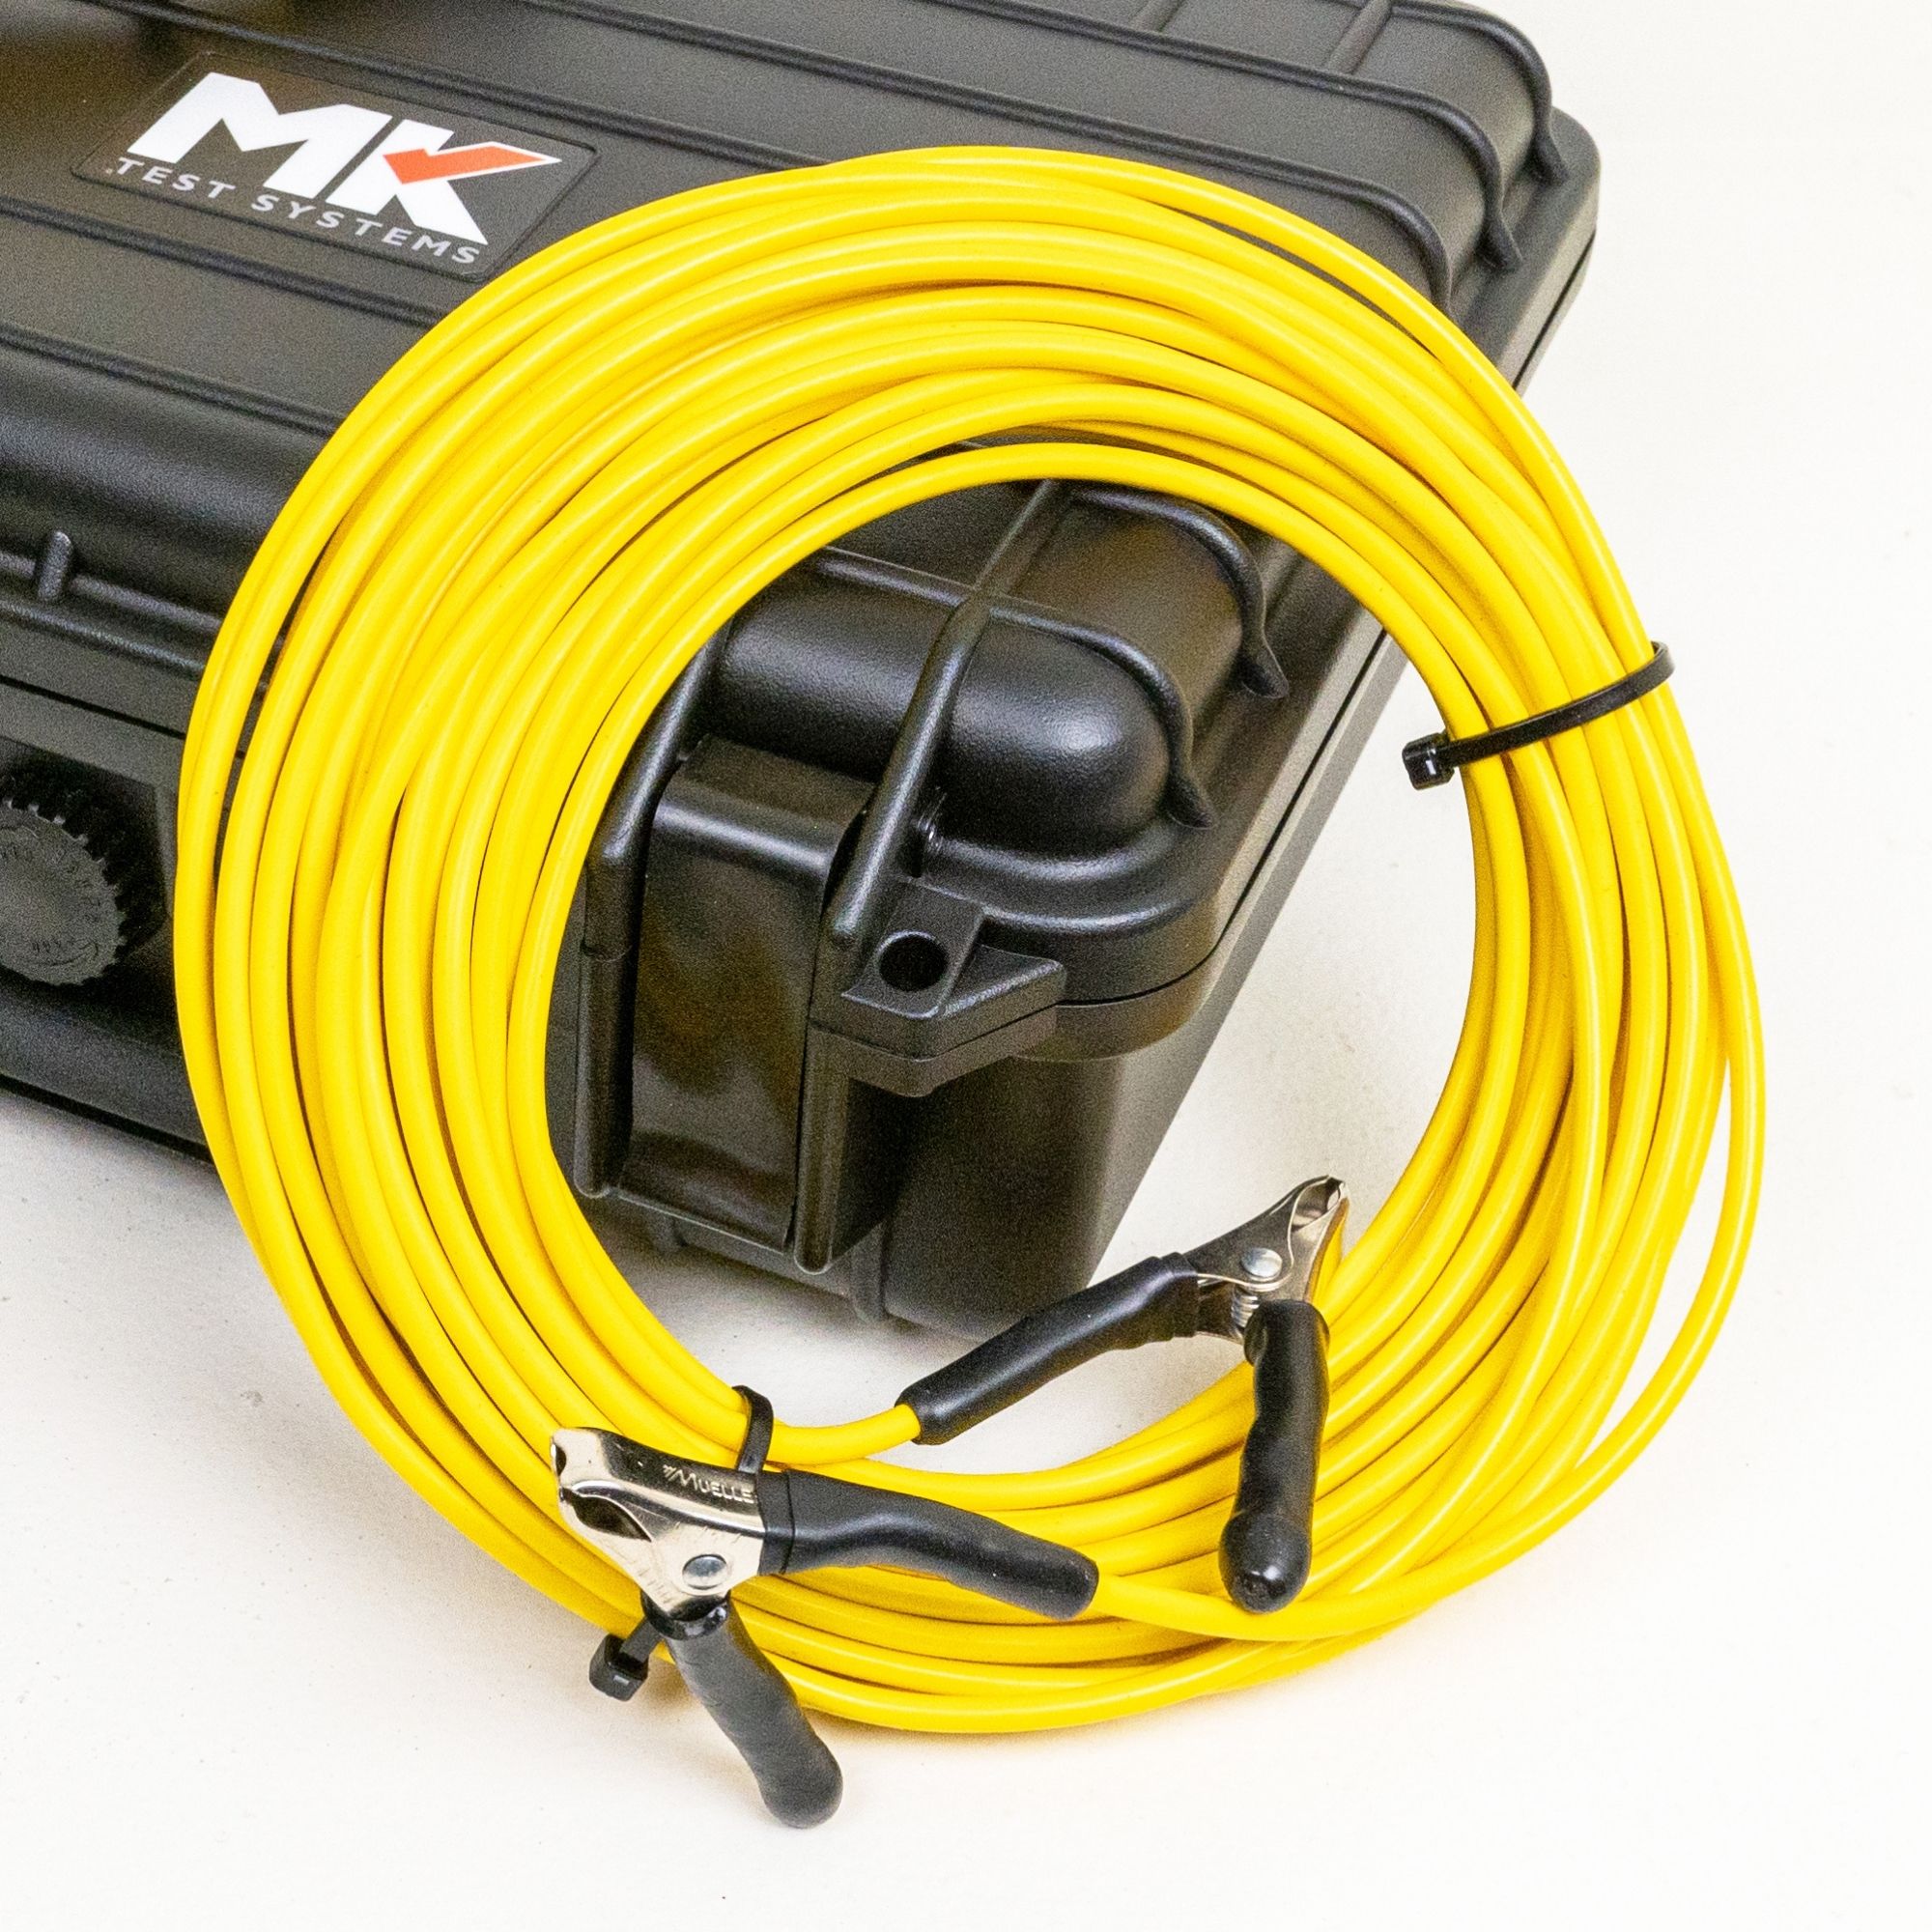 Loop adjustment jumper cables